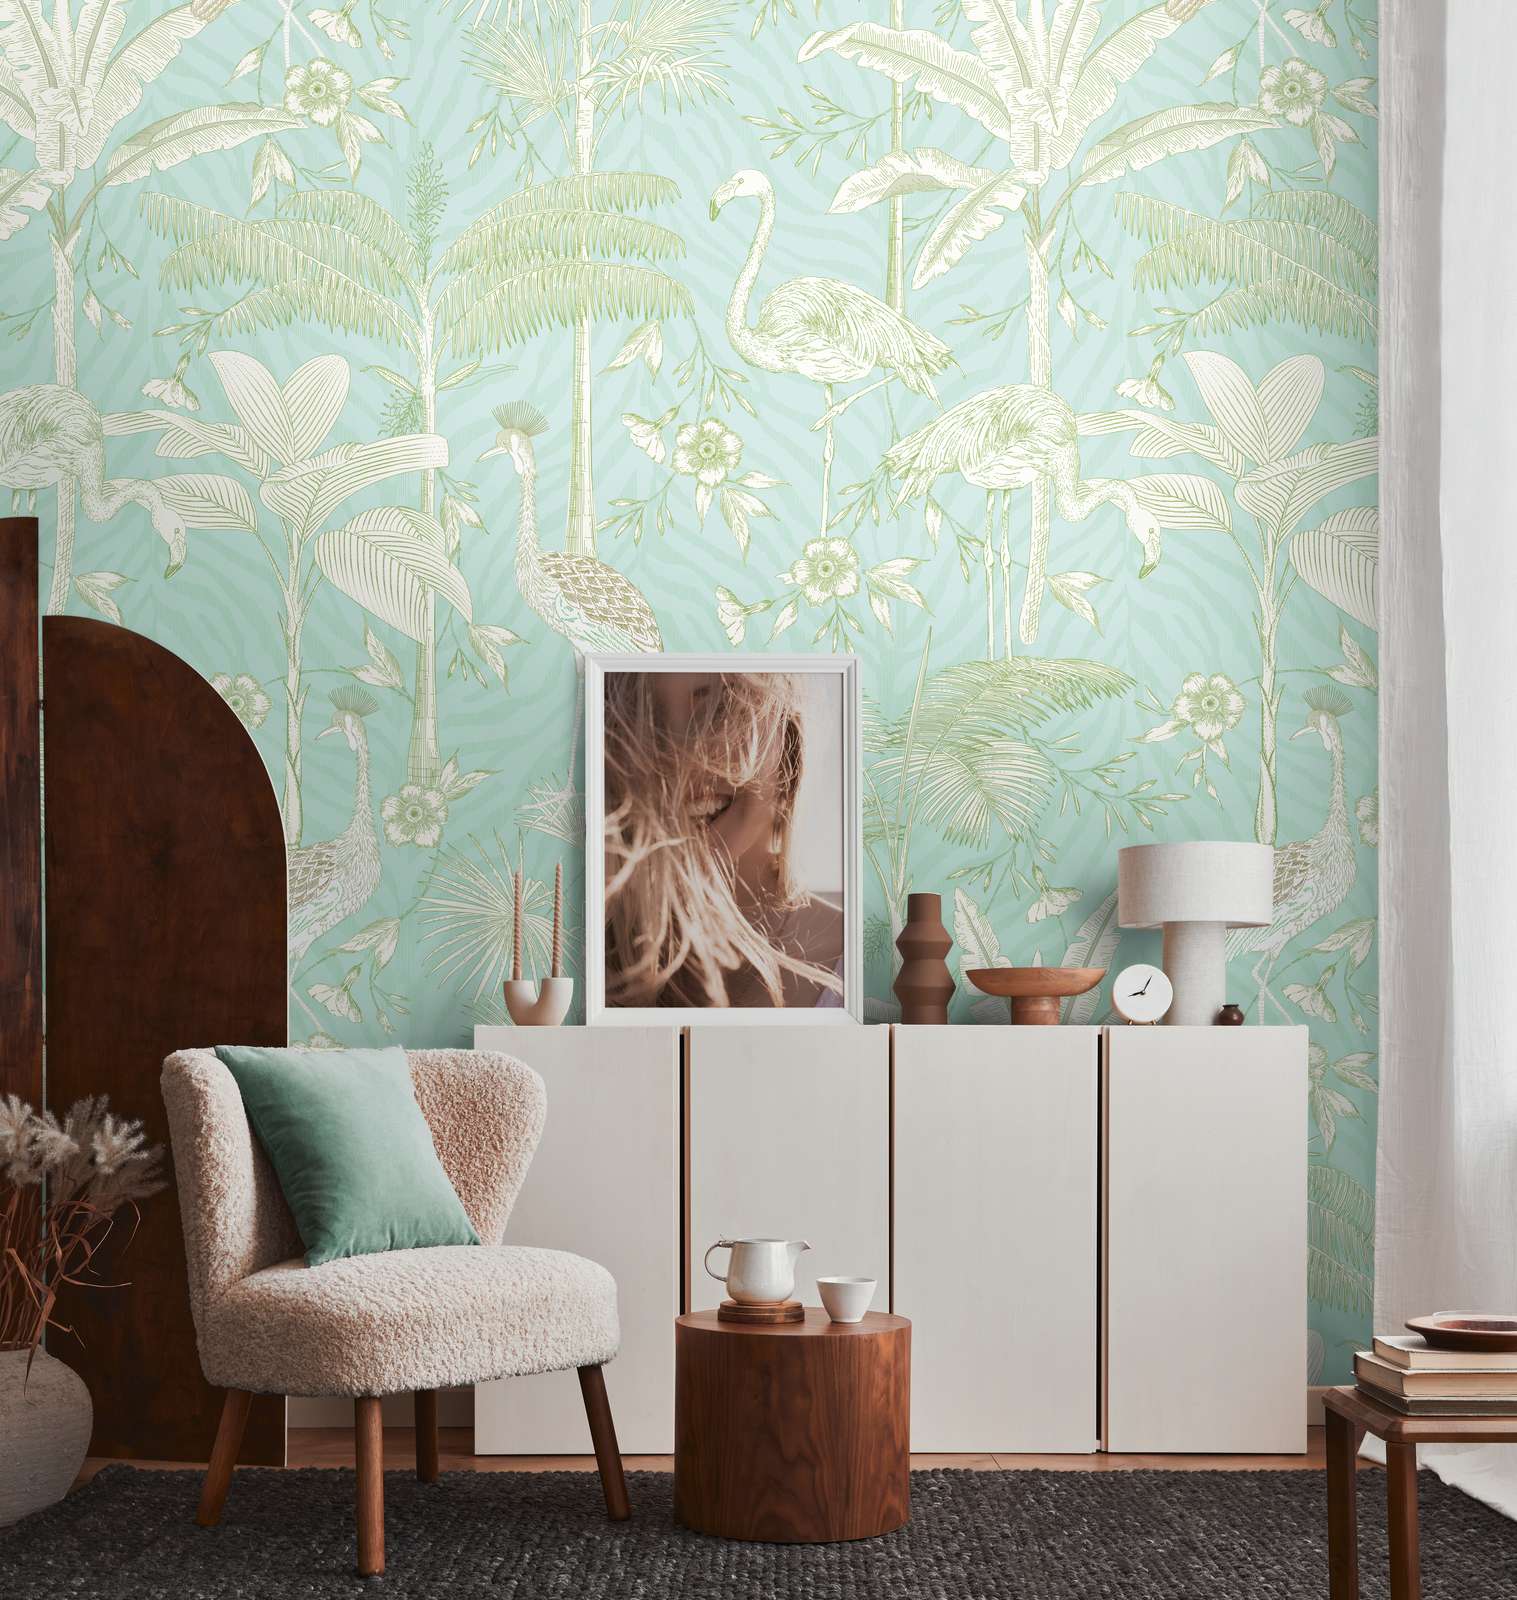             Papier peint intissé avec flamants roses et plantes en couleurs pâles - turquoise, blanc, vert
        